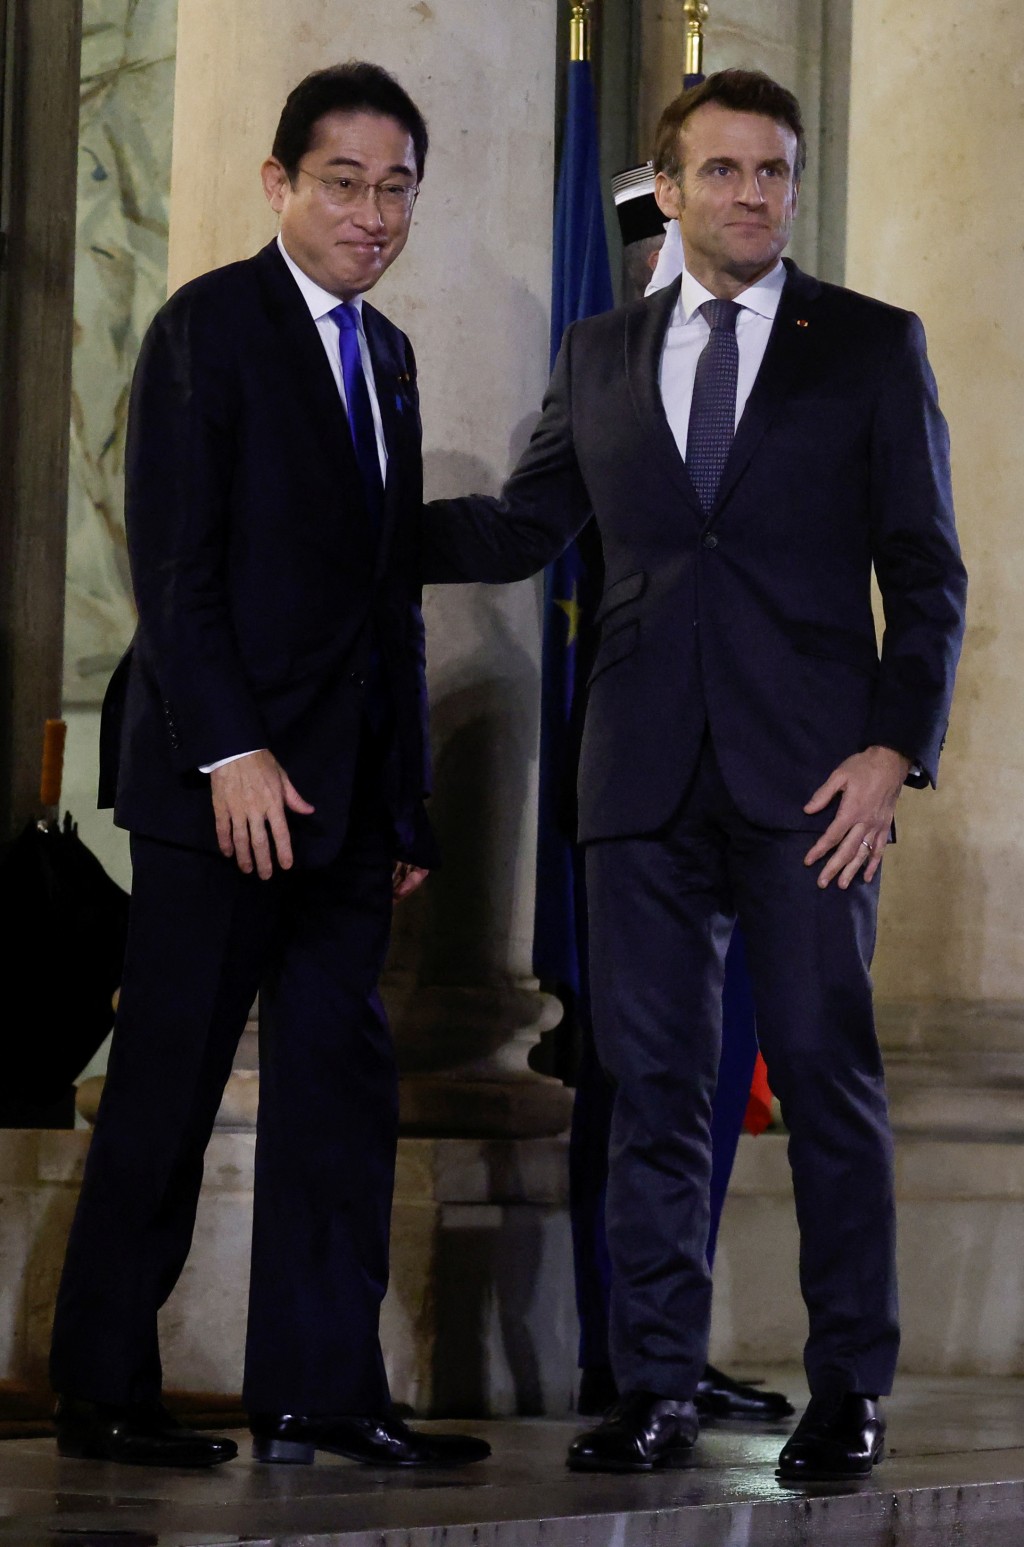 法國總統馬克龍歡迎日本首相岸田文雄抵達法國巴黎愛麗舍宮參加會議。reuters